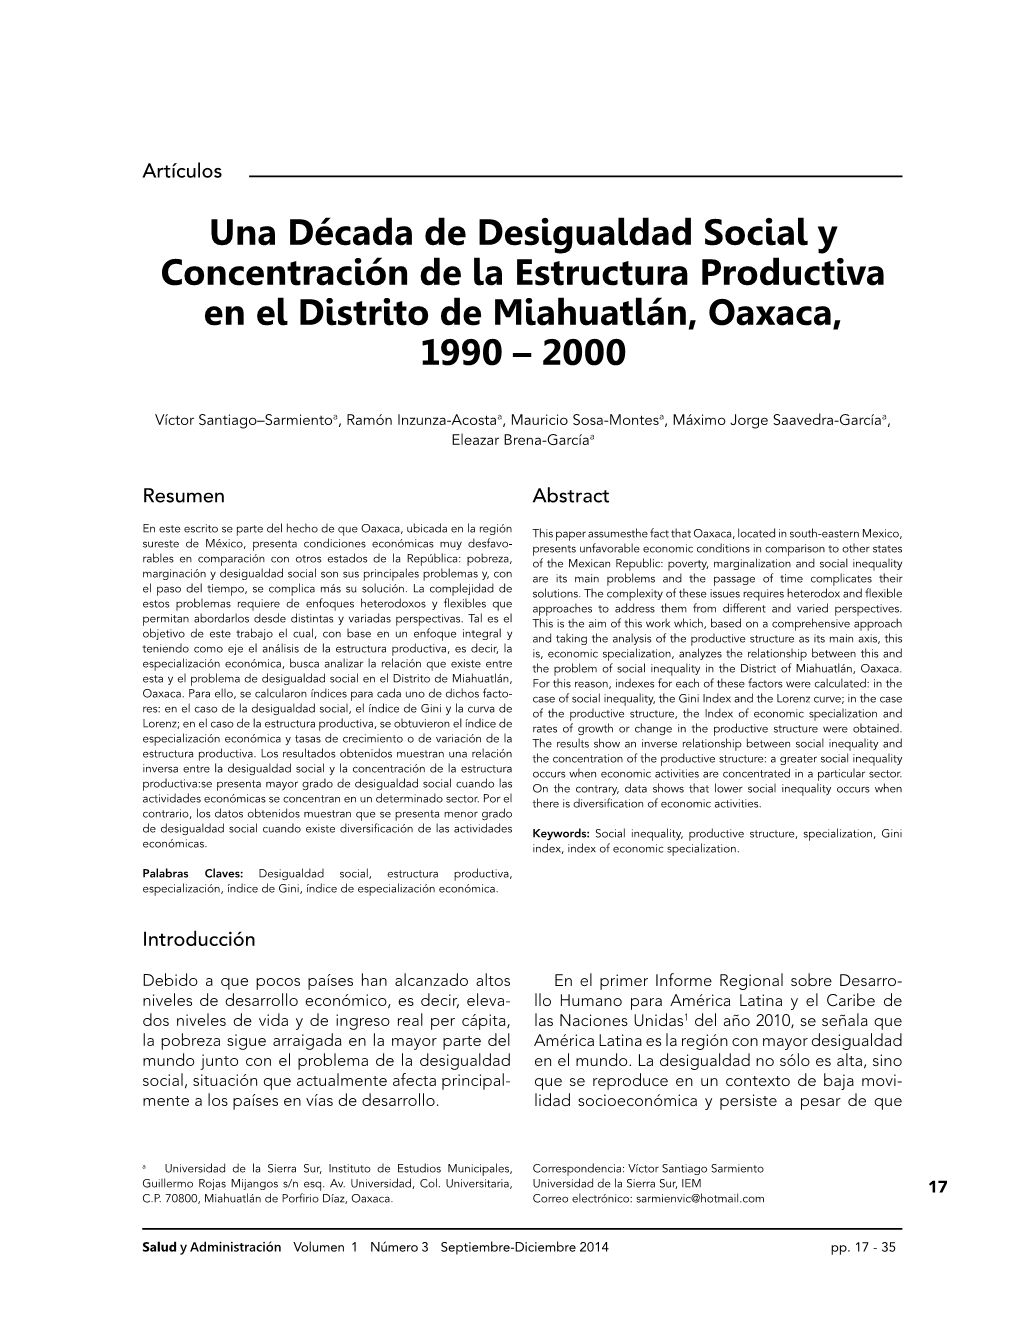 Una Década De Desigualdad Social Y Concentración De La Estructura Productiva En El Distrito De Miahuatlán, Oaxaca, 1990 – 2000